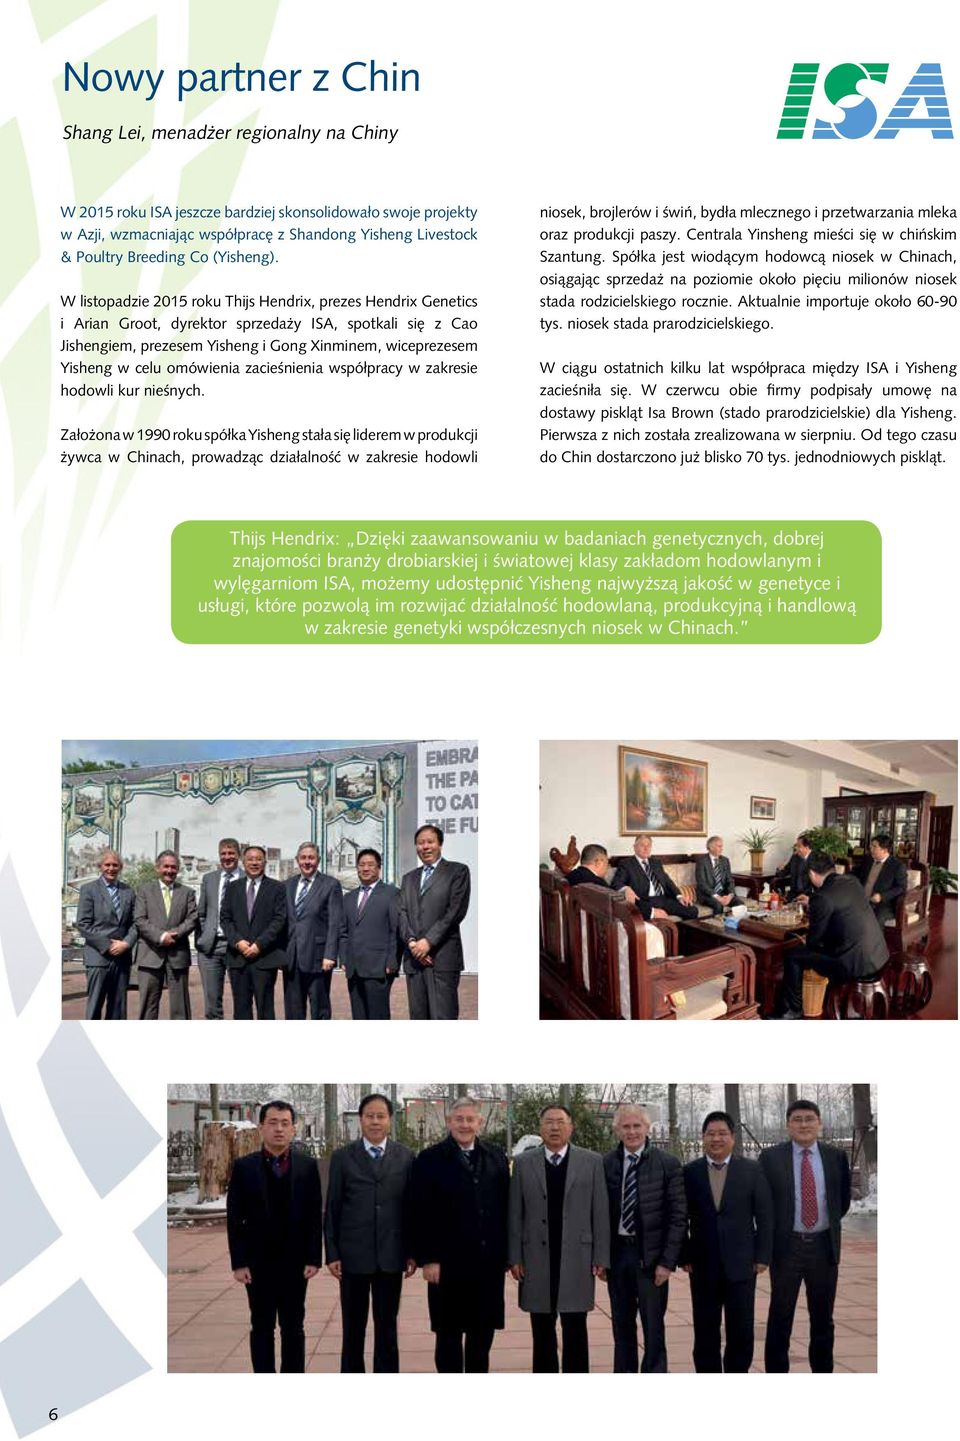 W listopadzie 2015 roku Thijs Hendrix, prezes Hendrix Genetics i Arian Groot, dyrektor sprzedaży ISA, spotkali się z Cao Jishengiem, prezesem Yisheng i Gong Xinminem, wiceprezesem Yisheng w celu